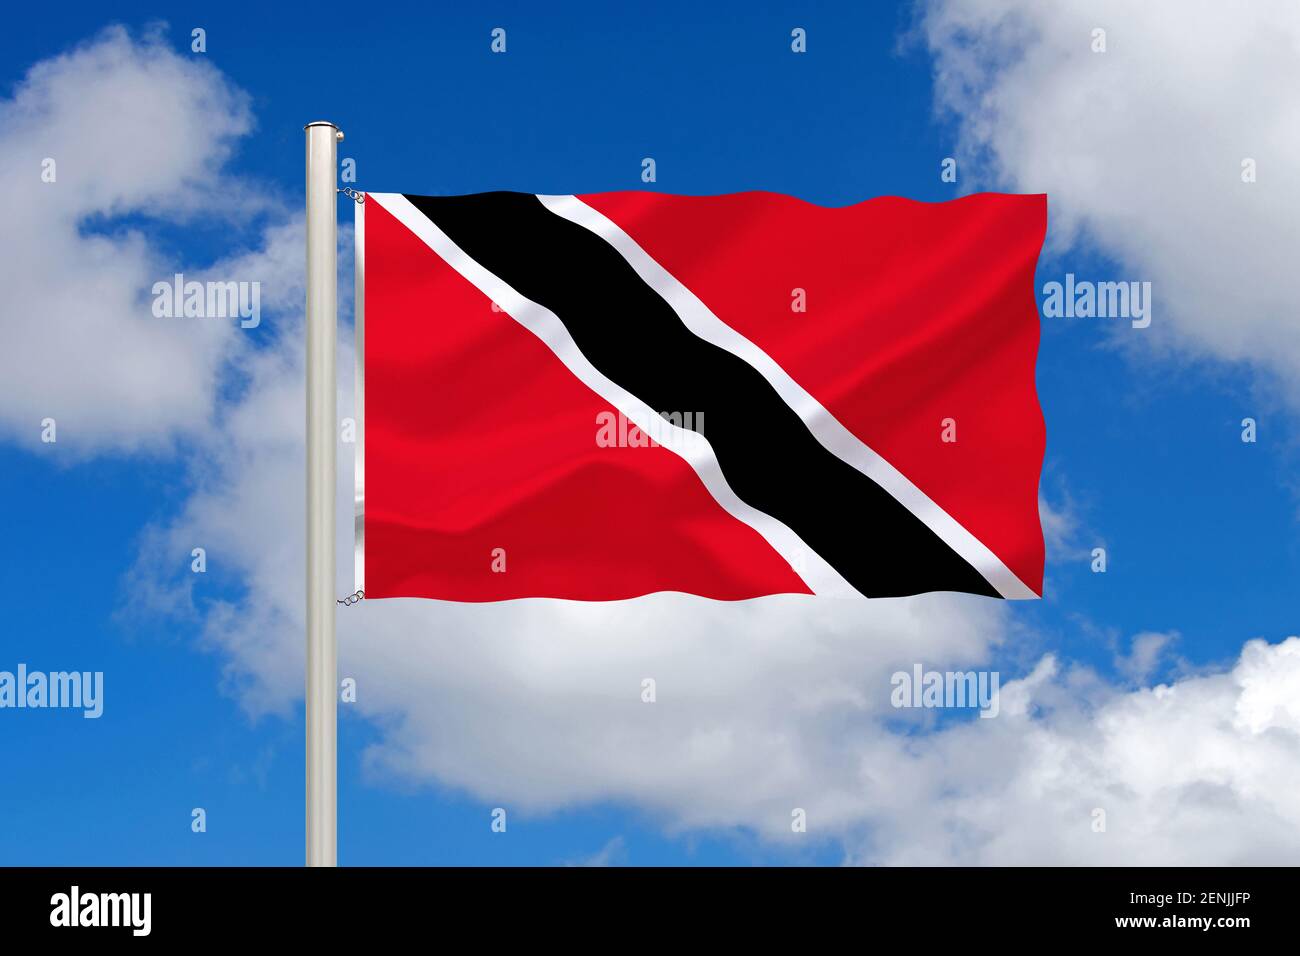 Die Flagge von Trinidad und Tobago, Inseln, Karibik, Inselstaat, Land in der Kribik, 2 Inseln, Stock Photo